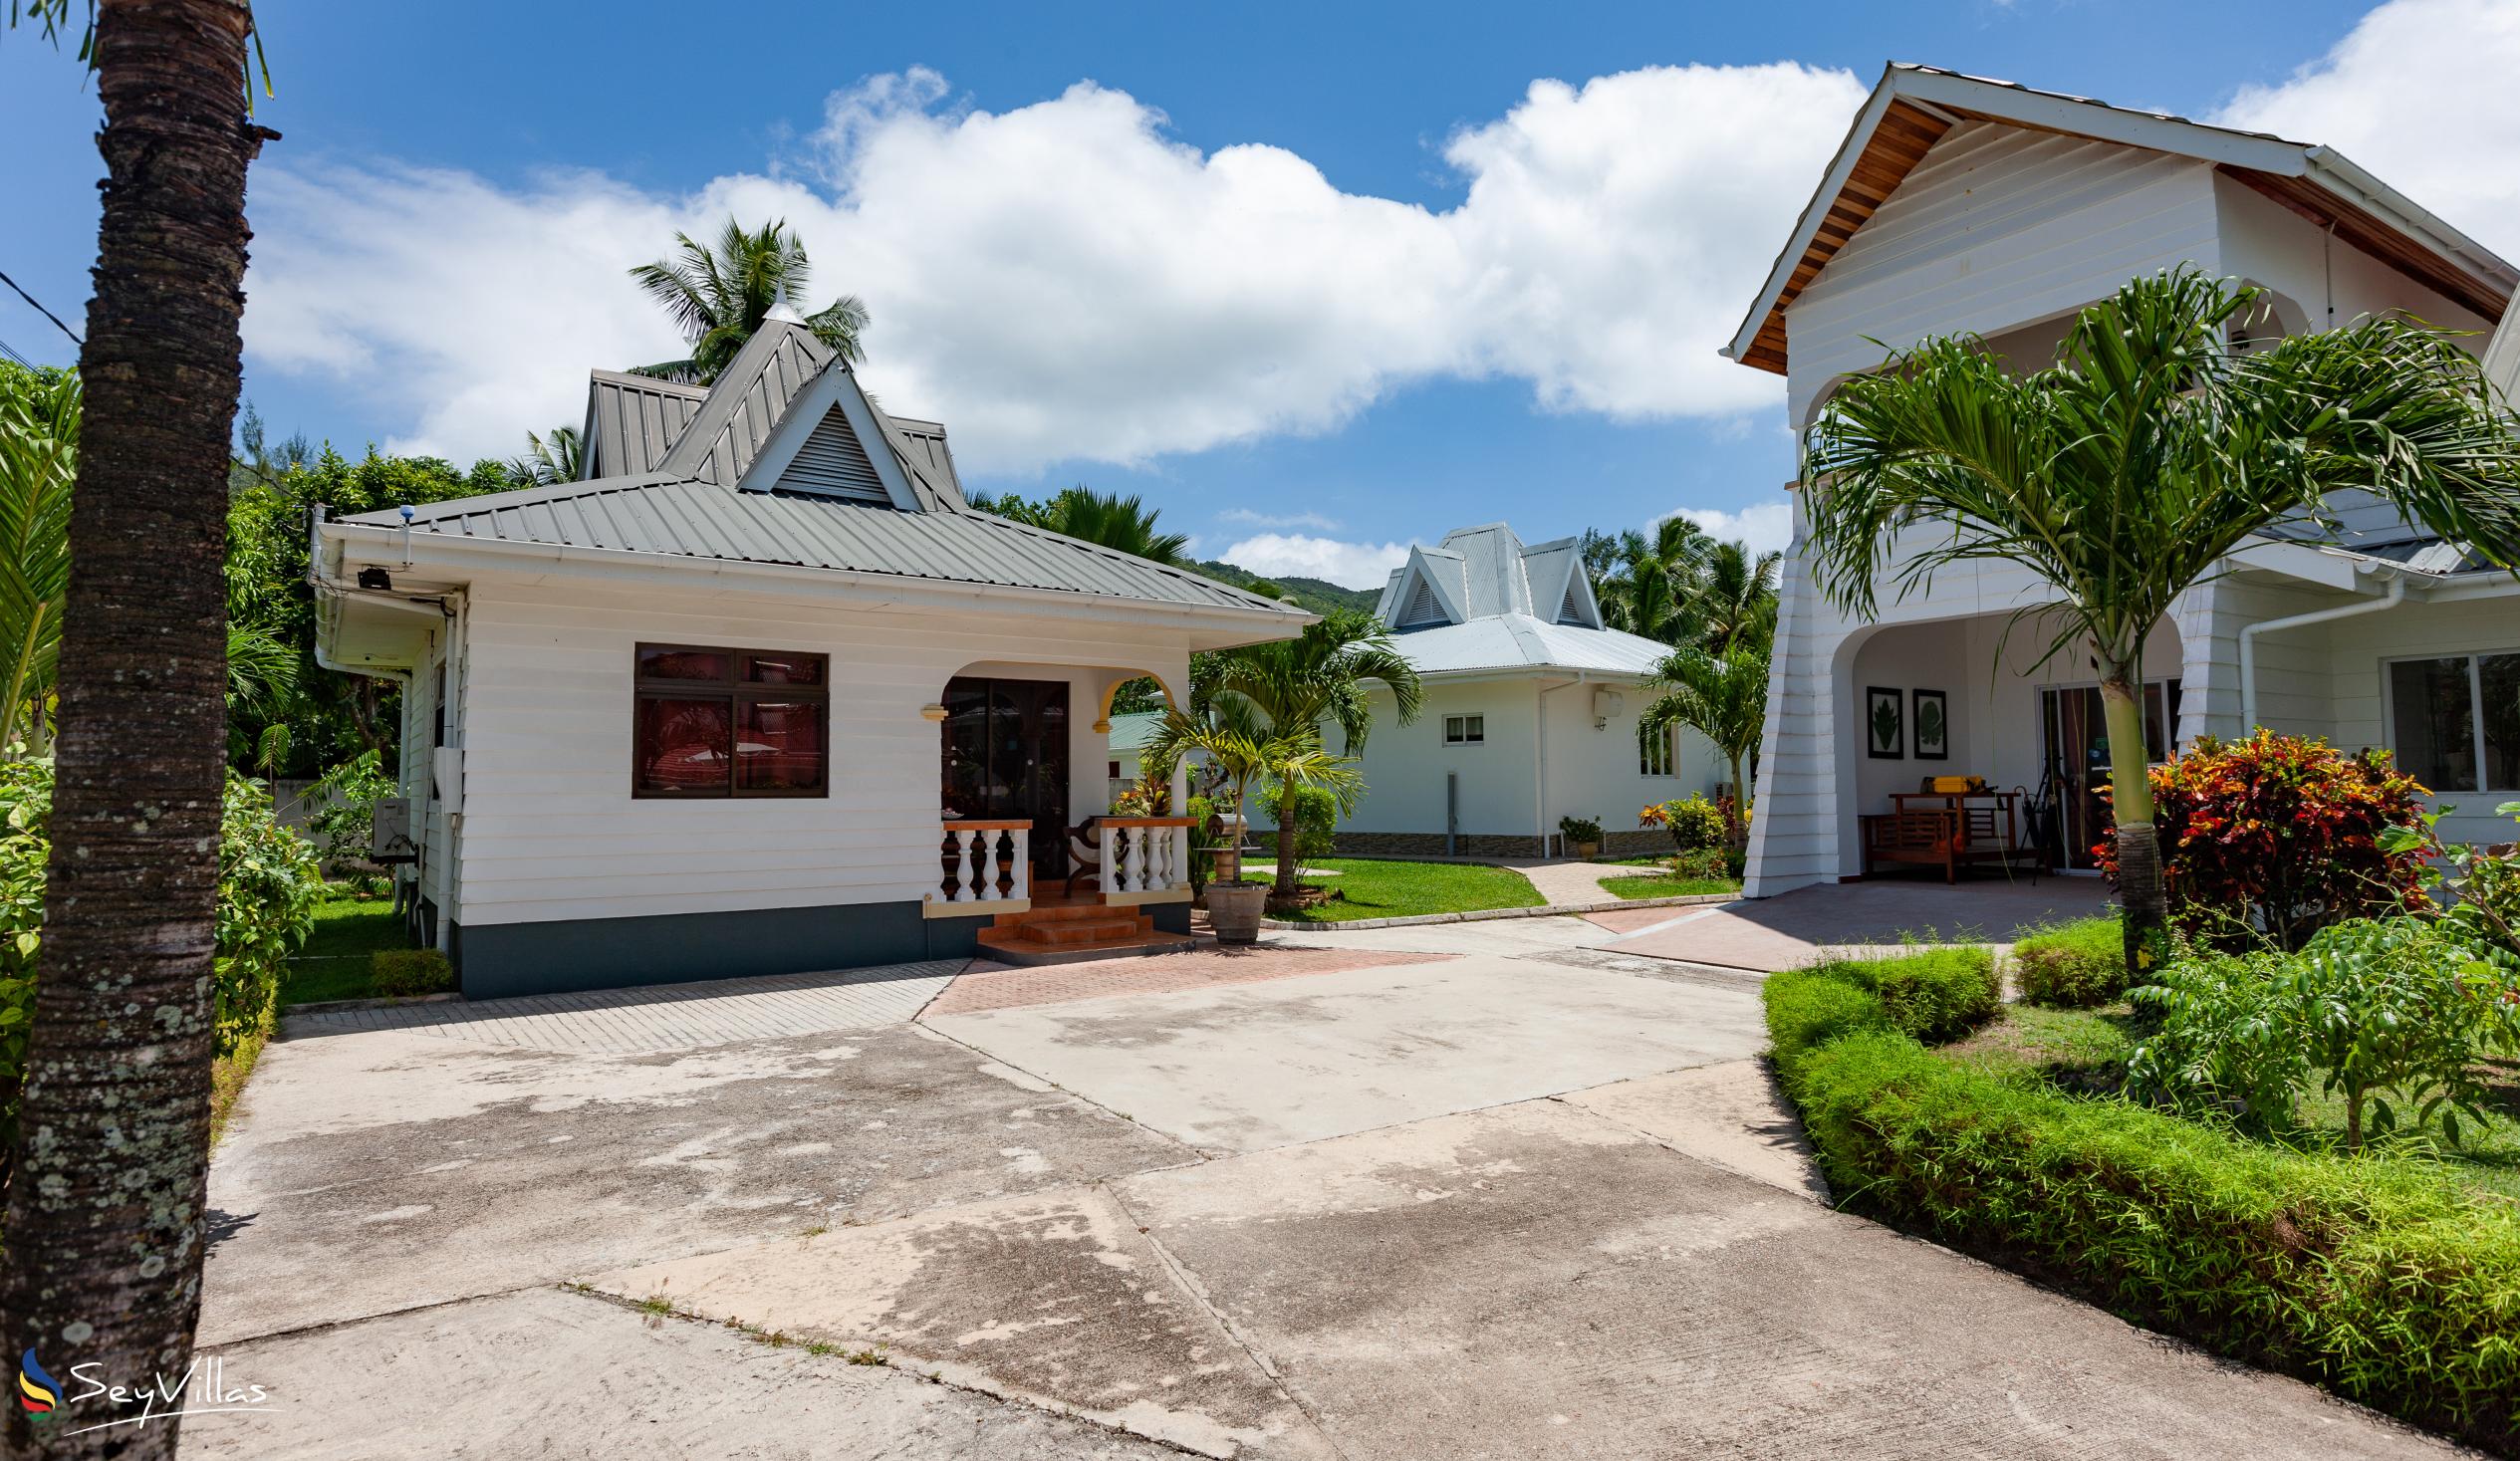 Foto 5: Villa Aya - Aussenbereich - Praslin (Seychellen)